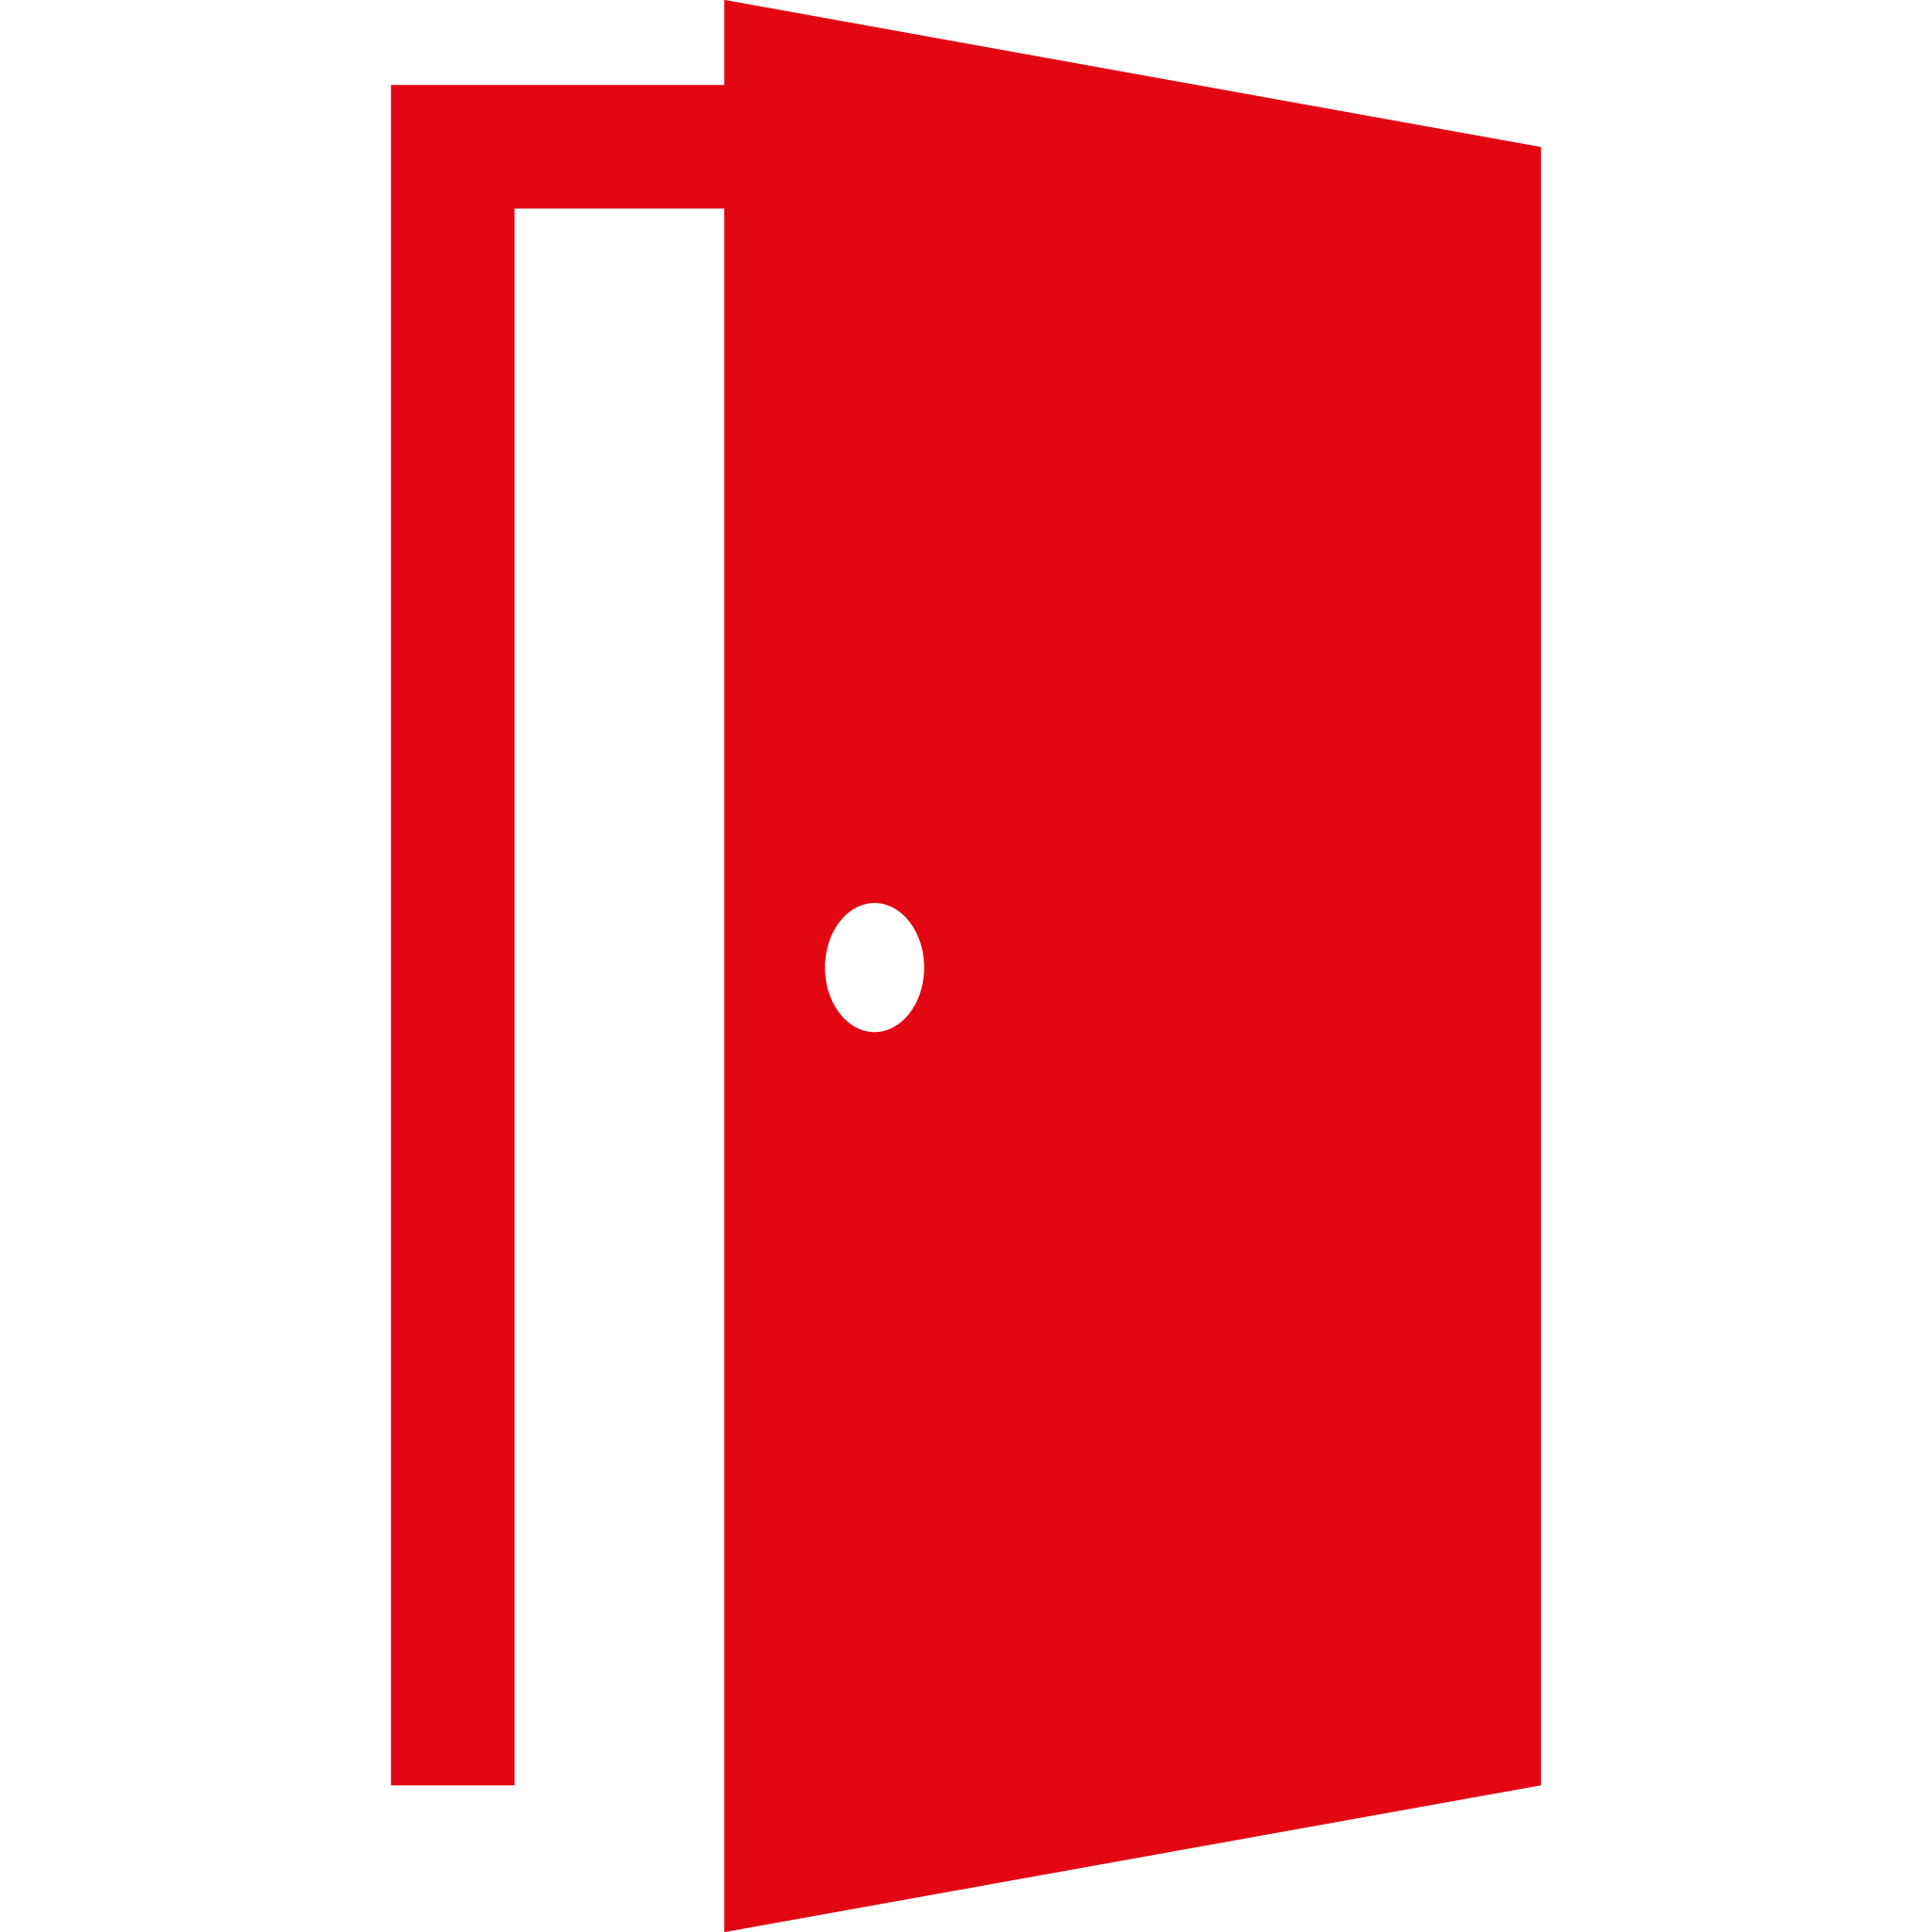 Открытая дверь символ. Значок двери. Пиктограмма дверь. Открытая дверь. Логотип двери.